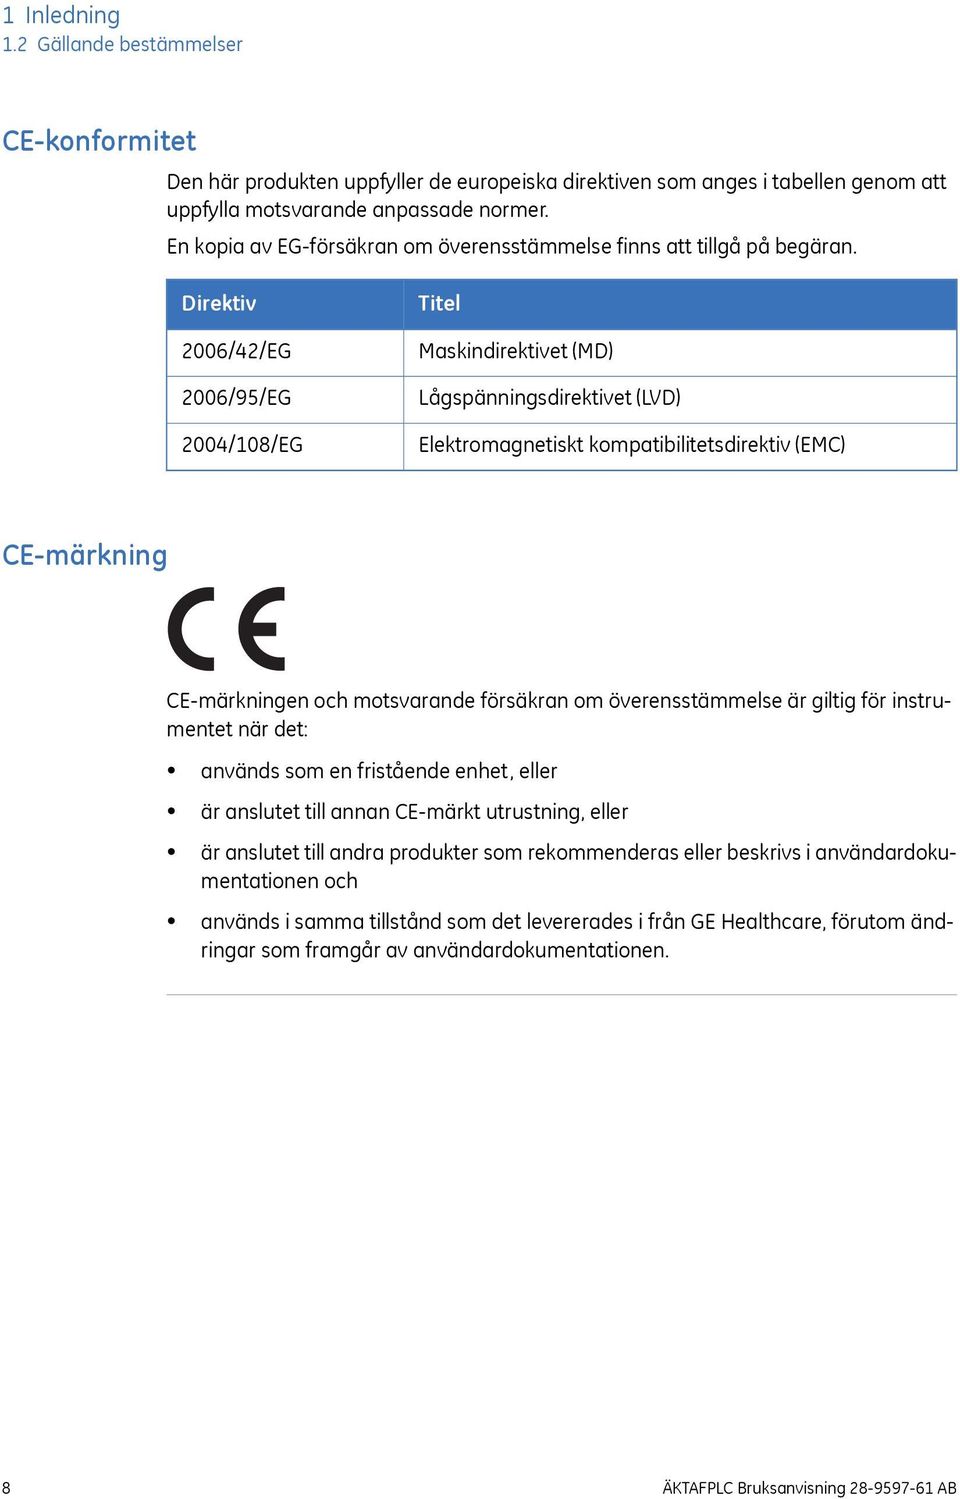 Direktiv 2006/42/EG 2006/95/EG 2004/108/EG Titel Maskindirektivet (MD) Lågspänningsdirektivet (LVD) Elektromagnetiskt kompatibilitetsdirektiv (EMC) CE-märkning CE-märkningen och motsvarande försäkran